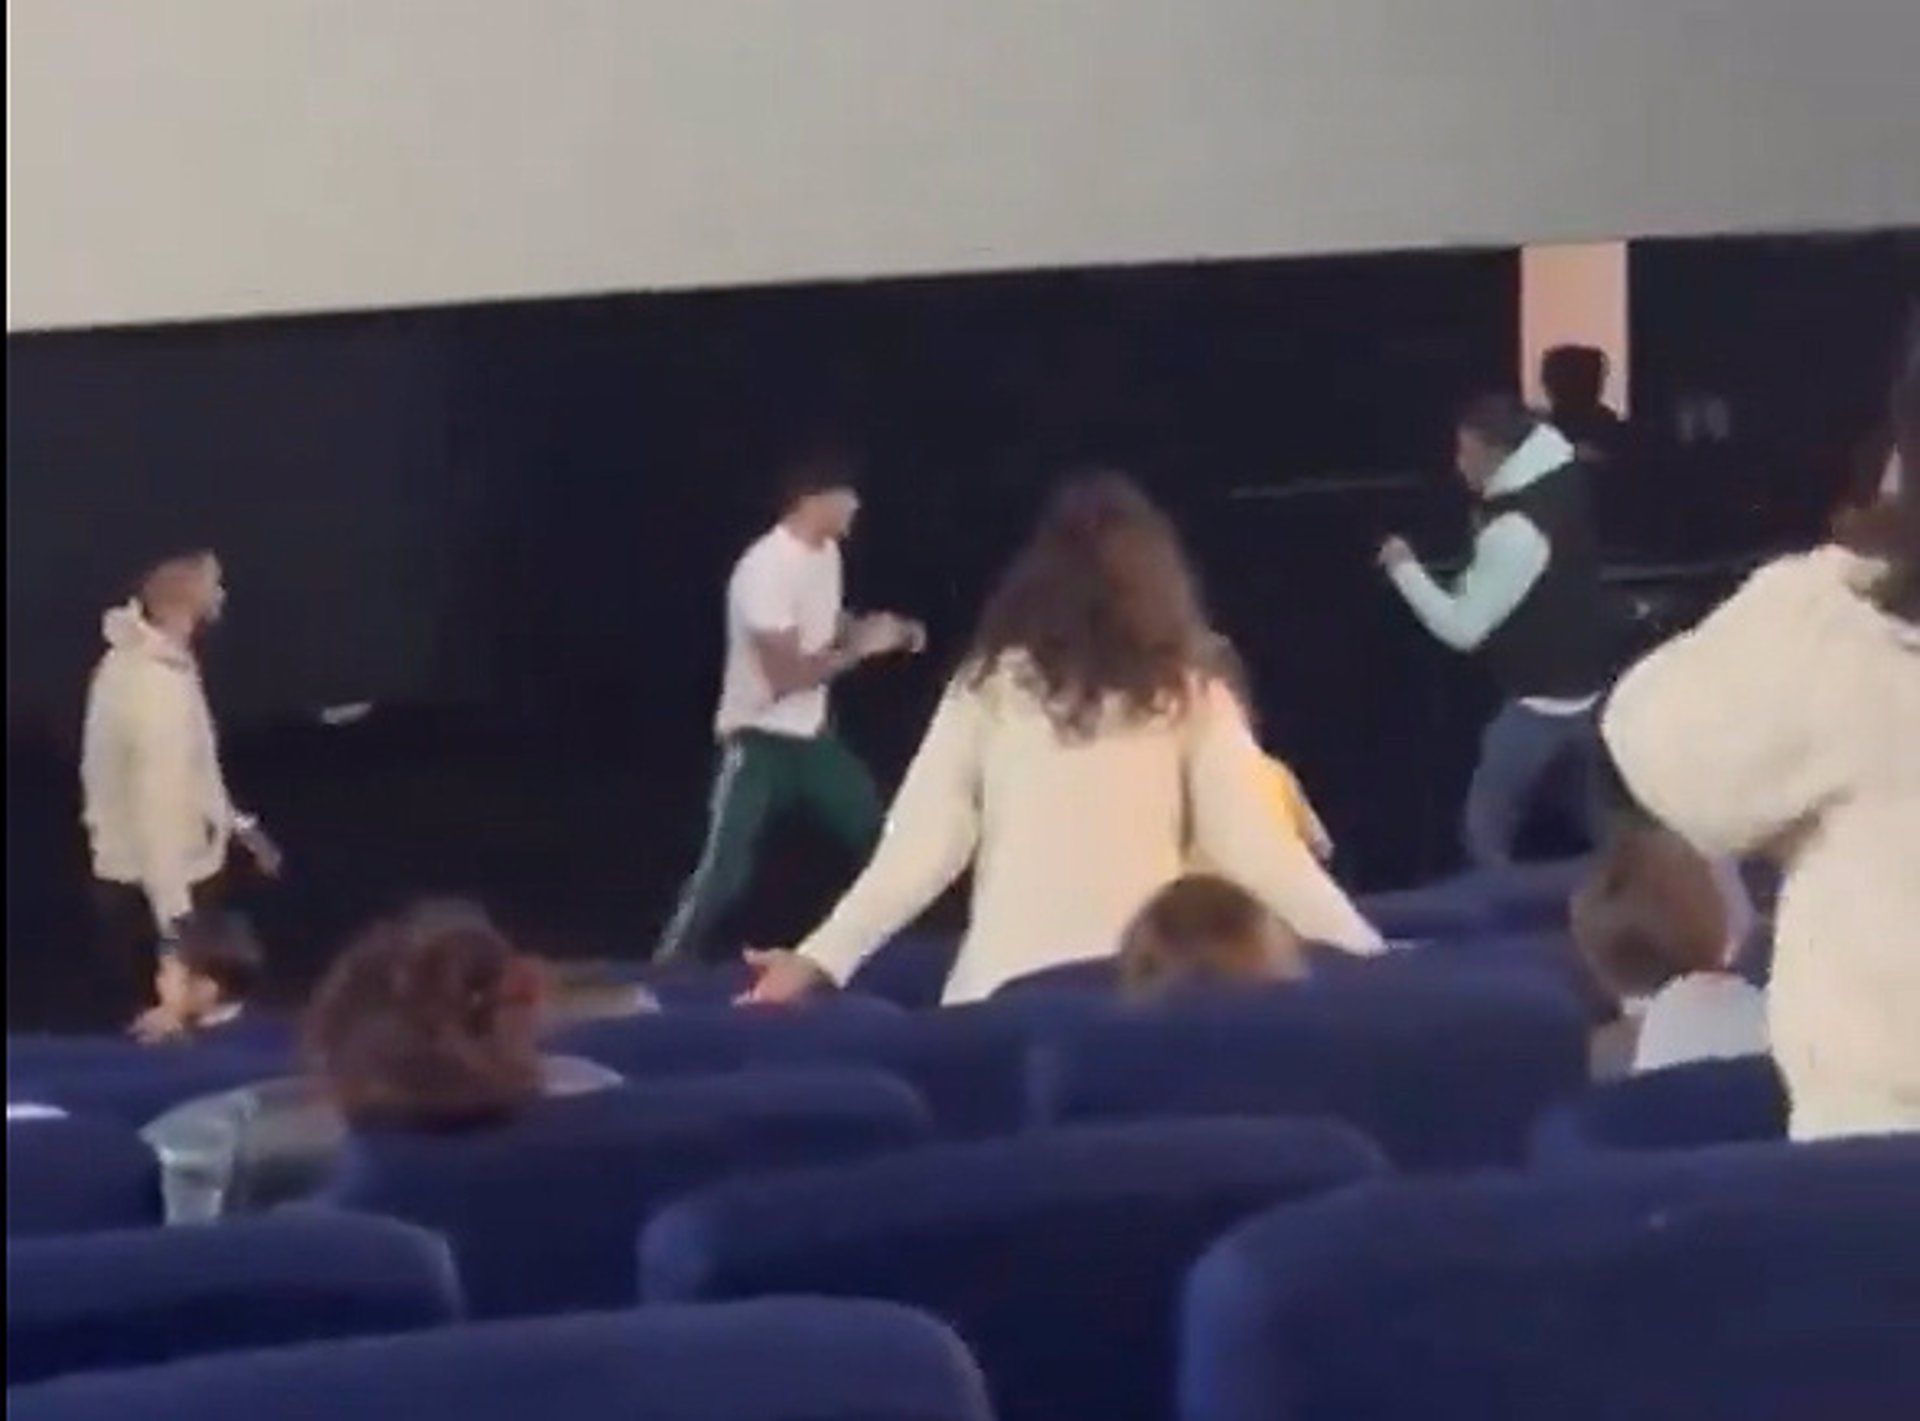 La agresión tuvo lugar en un cine de León. | L.N.C.